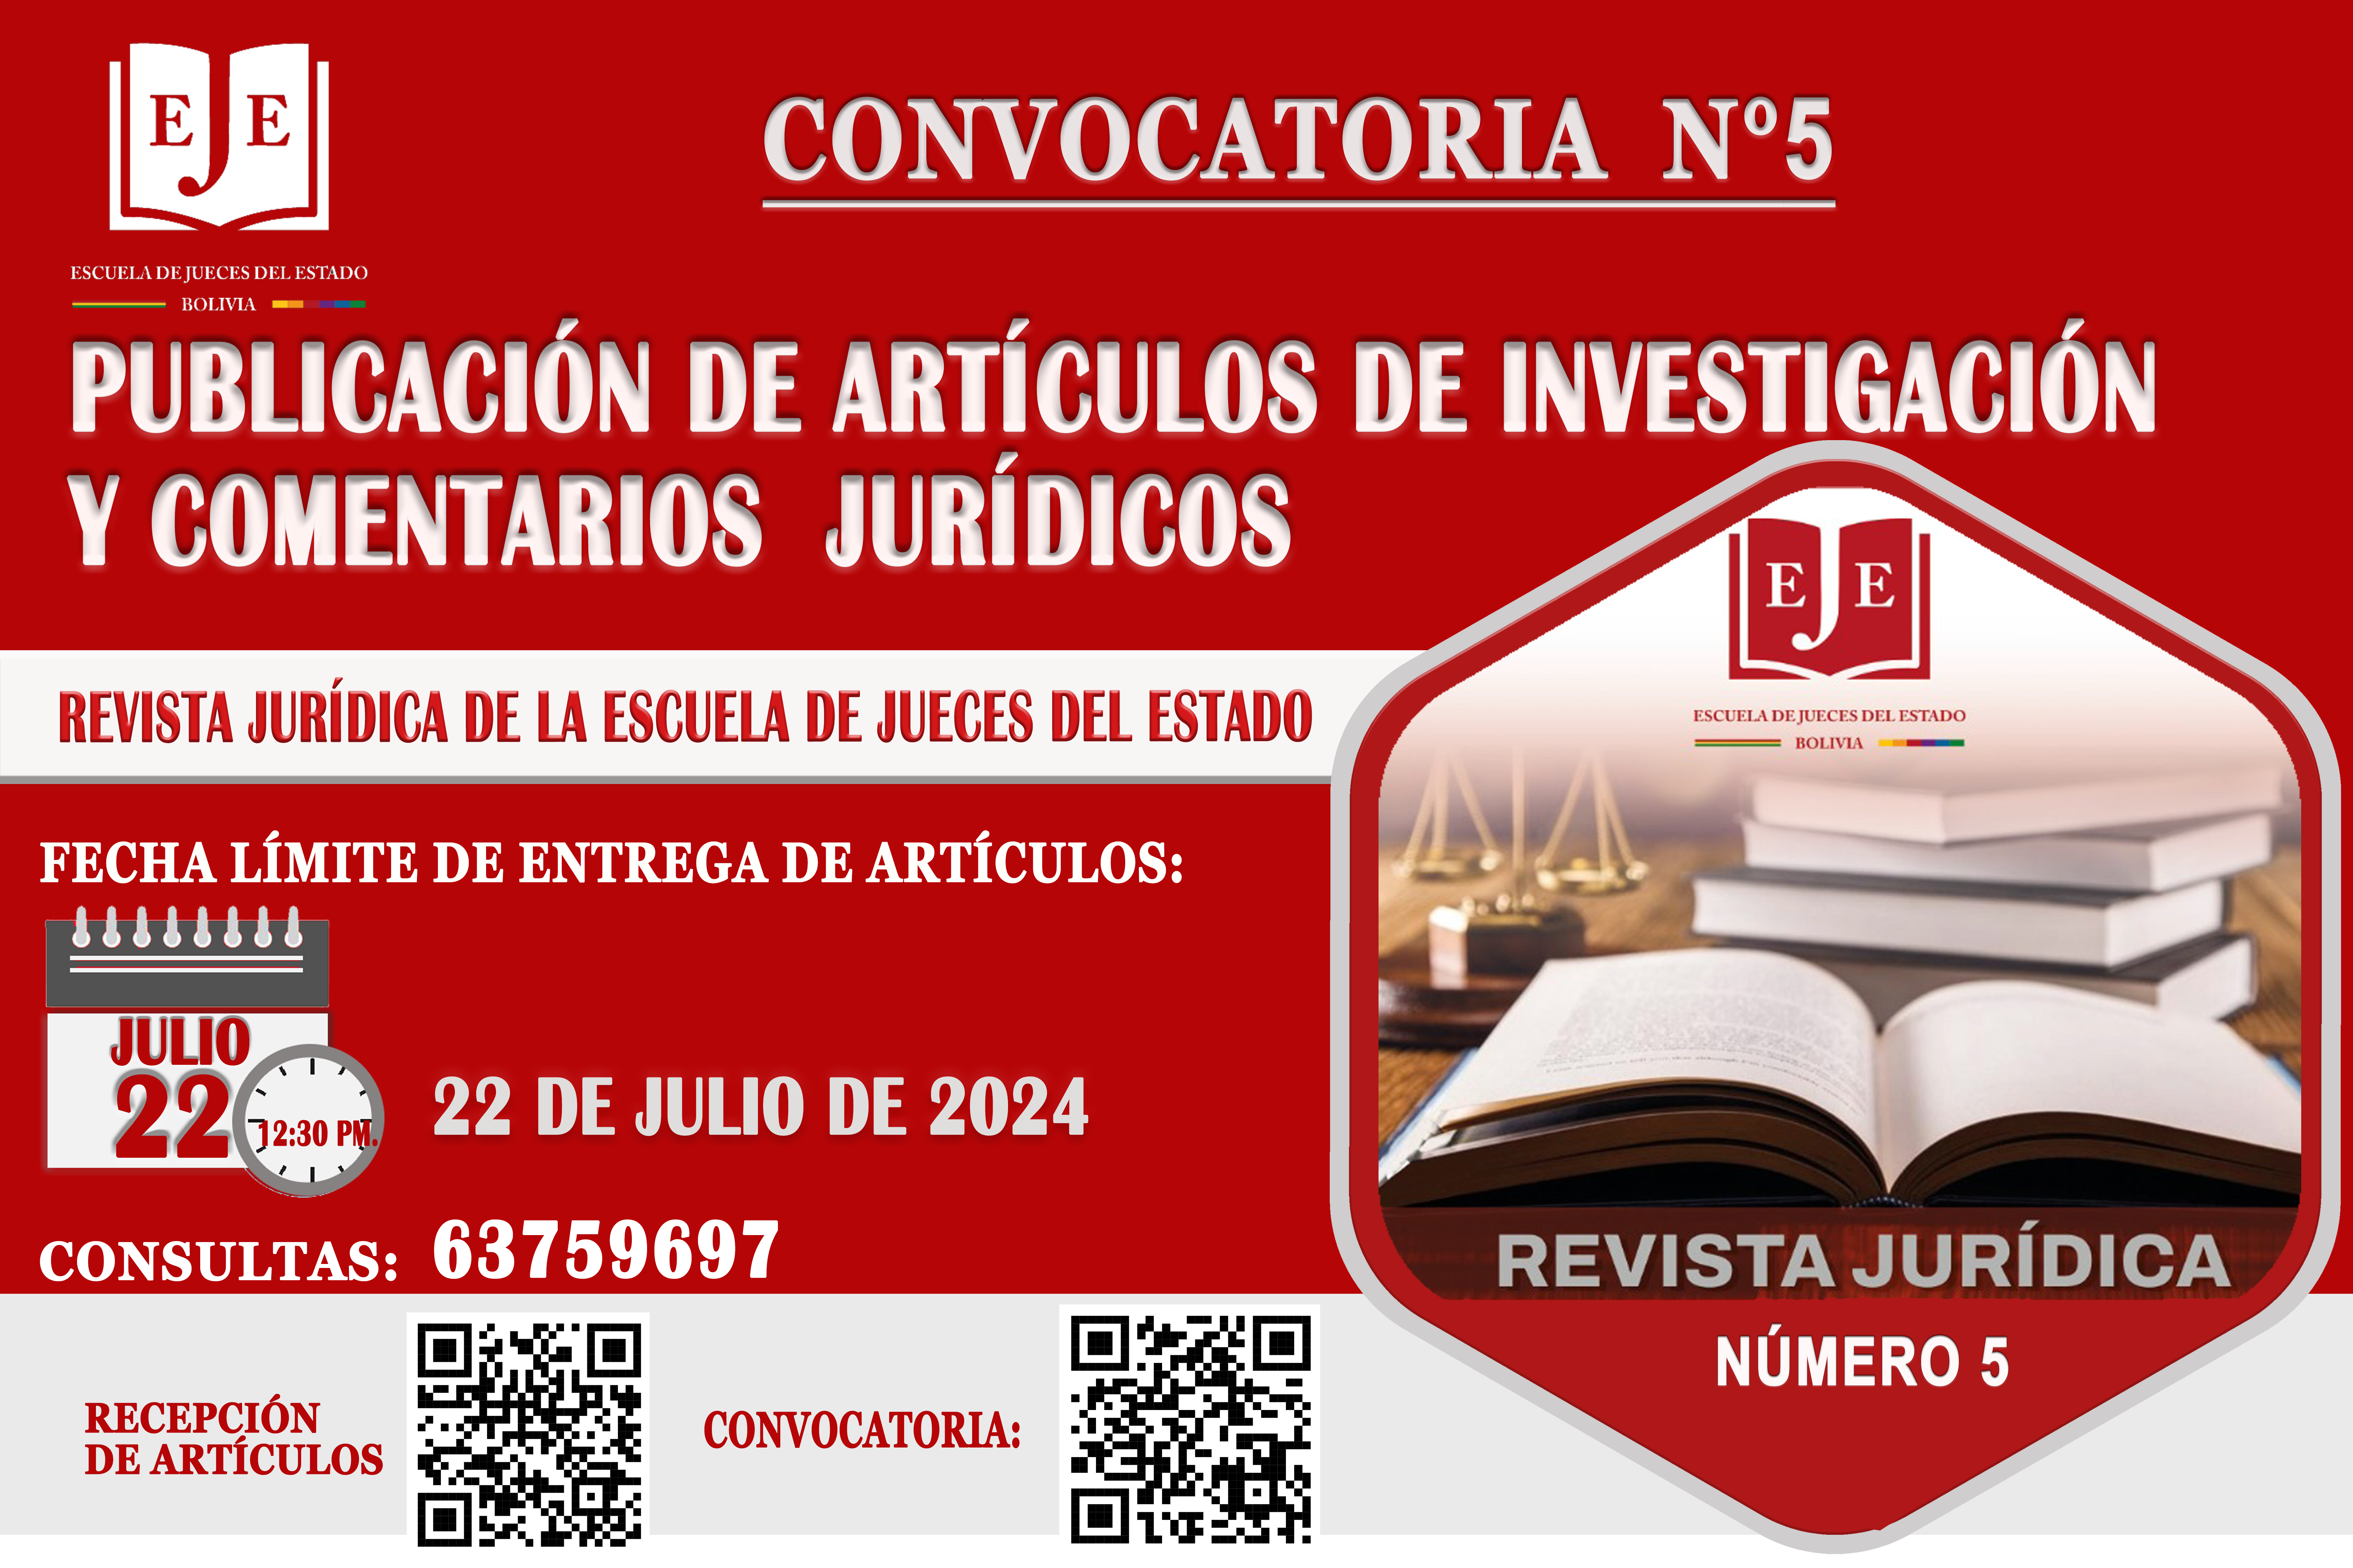 CONVOCATORIA N° 5 - PUBLICACIÓN DE ARTICULOS DE INVESTIGACION Y COMENTARIOS JURÍDICOS